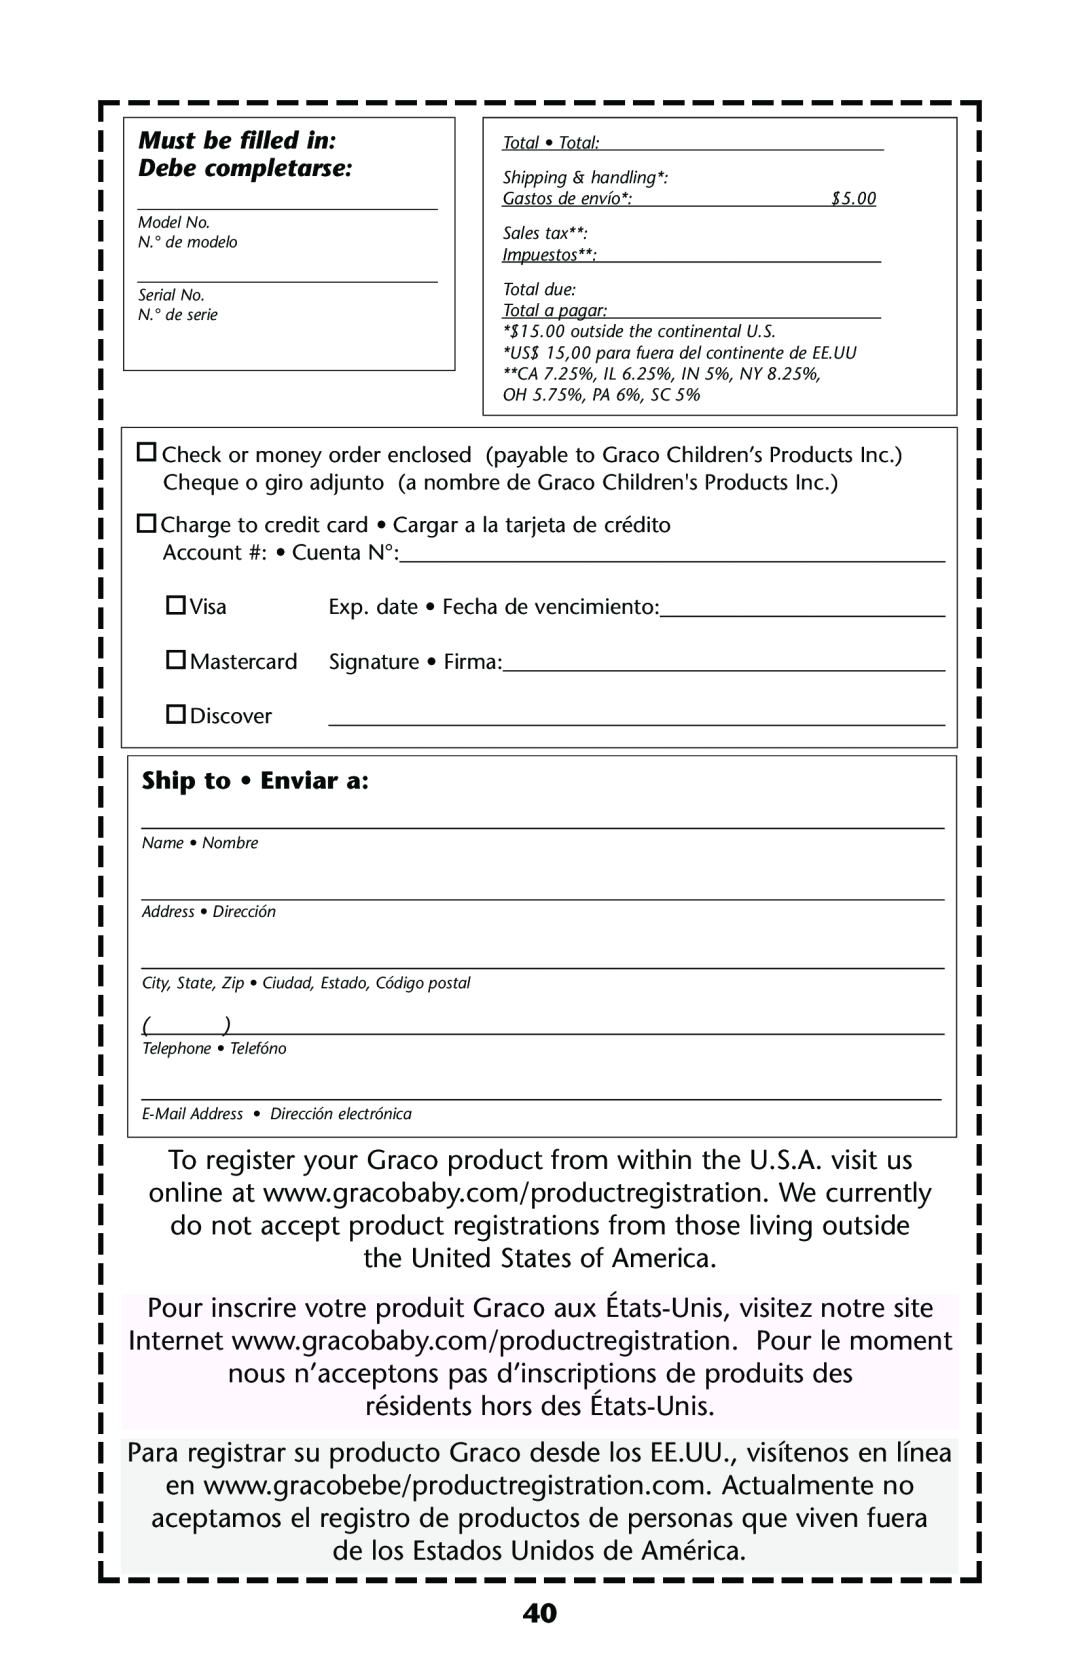 Graco ISPS013AC manual résidents hors des États-Unis, Para registrar su producto Graco desde los EE.UU., visítenos en línea 